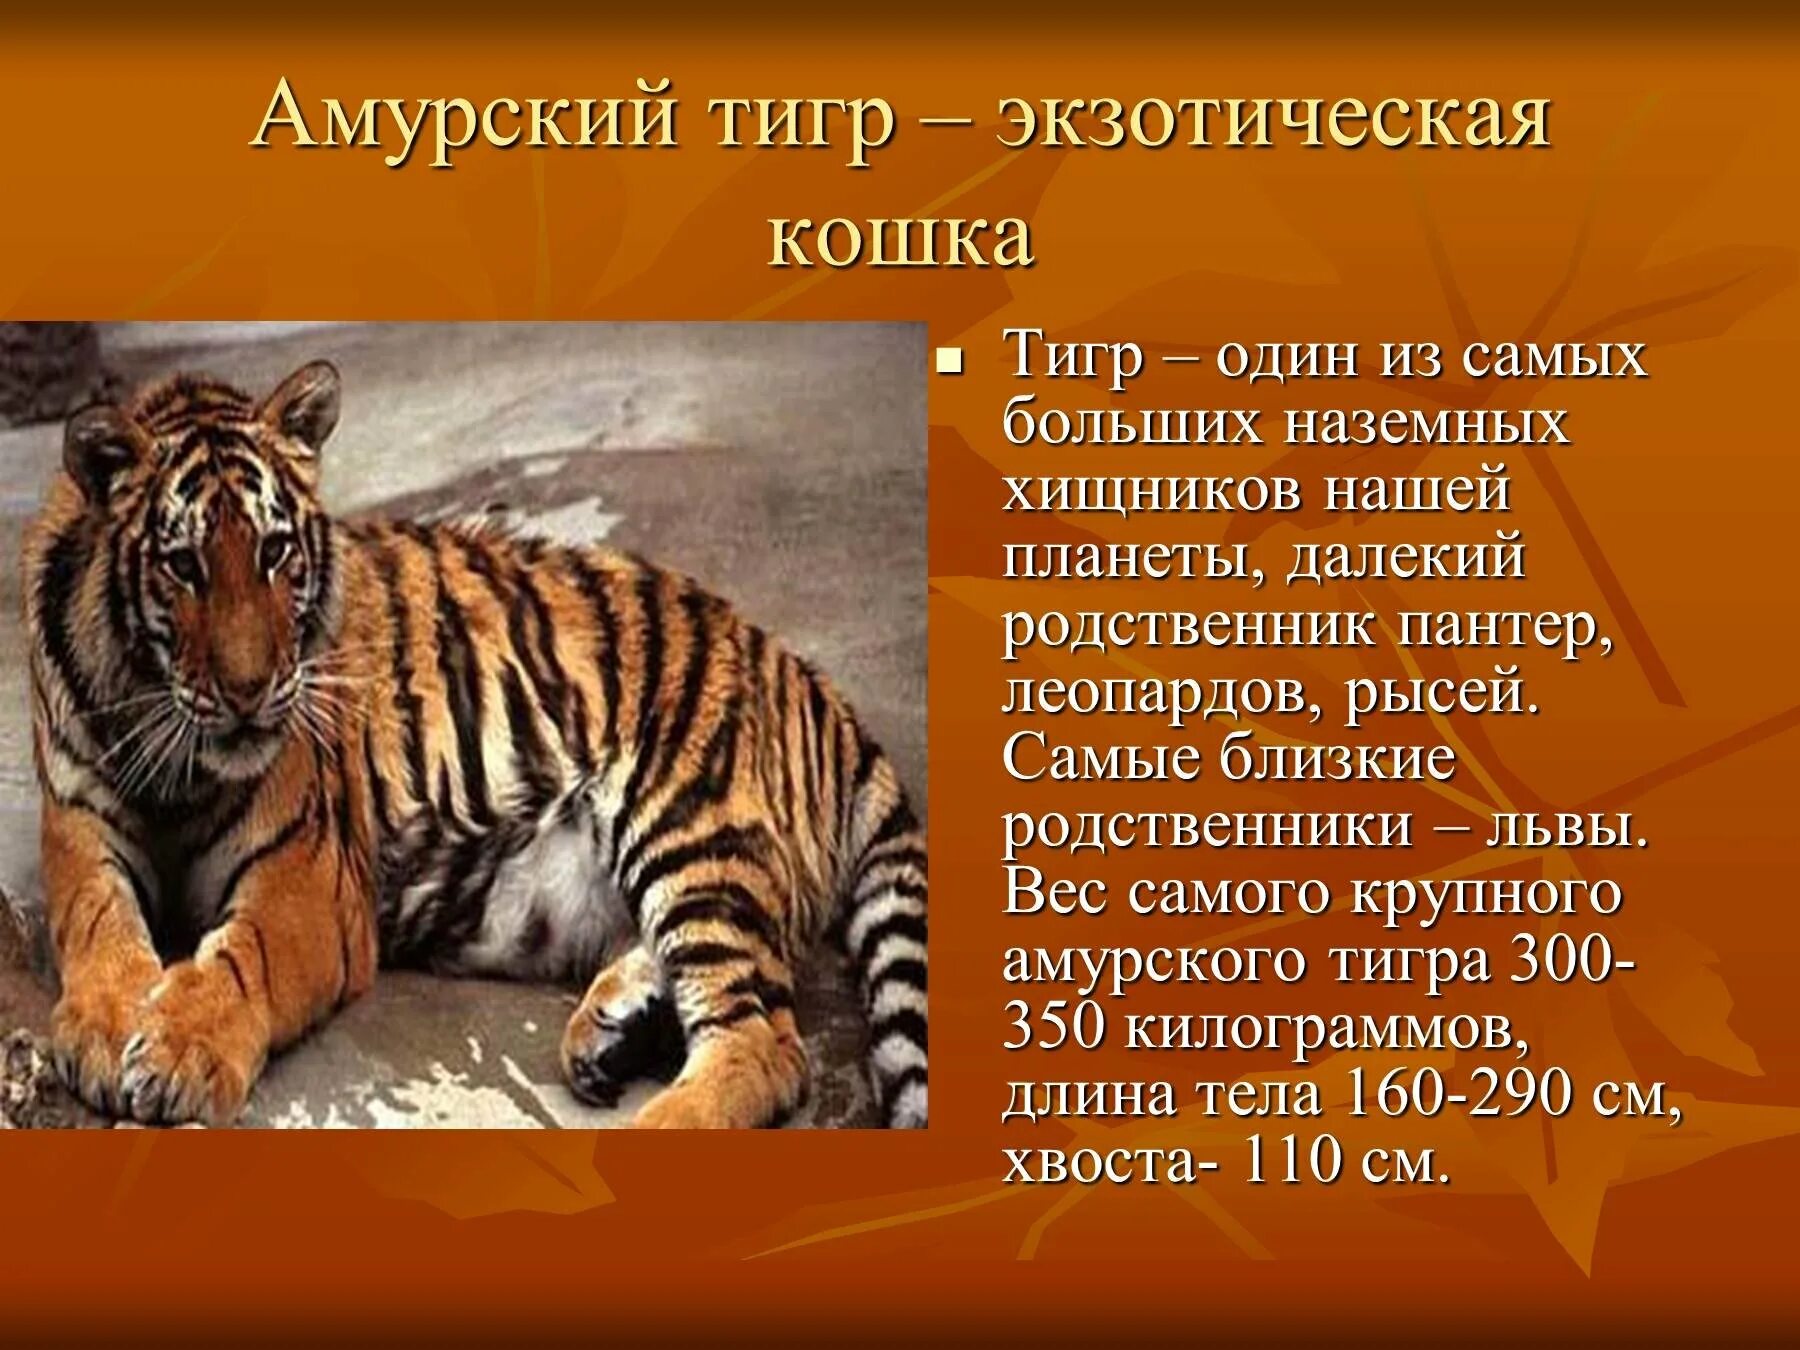 Самый большой рассказ в мире. Рассказ про Амурского тигра. Доклад про Амурского тигра. Описание Амурского тигра. Расказ о омурскам тигром.